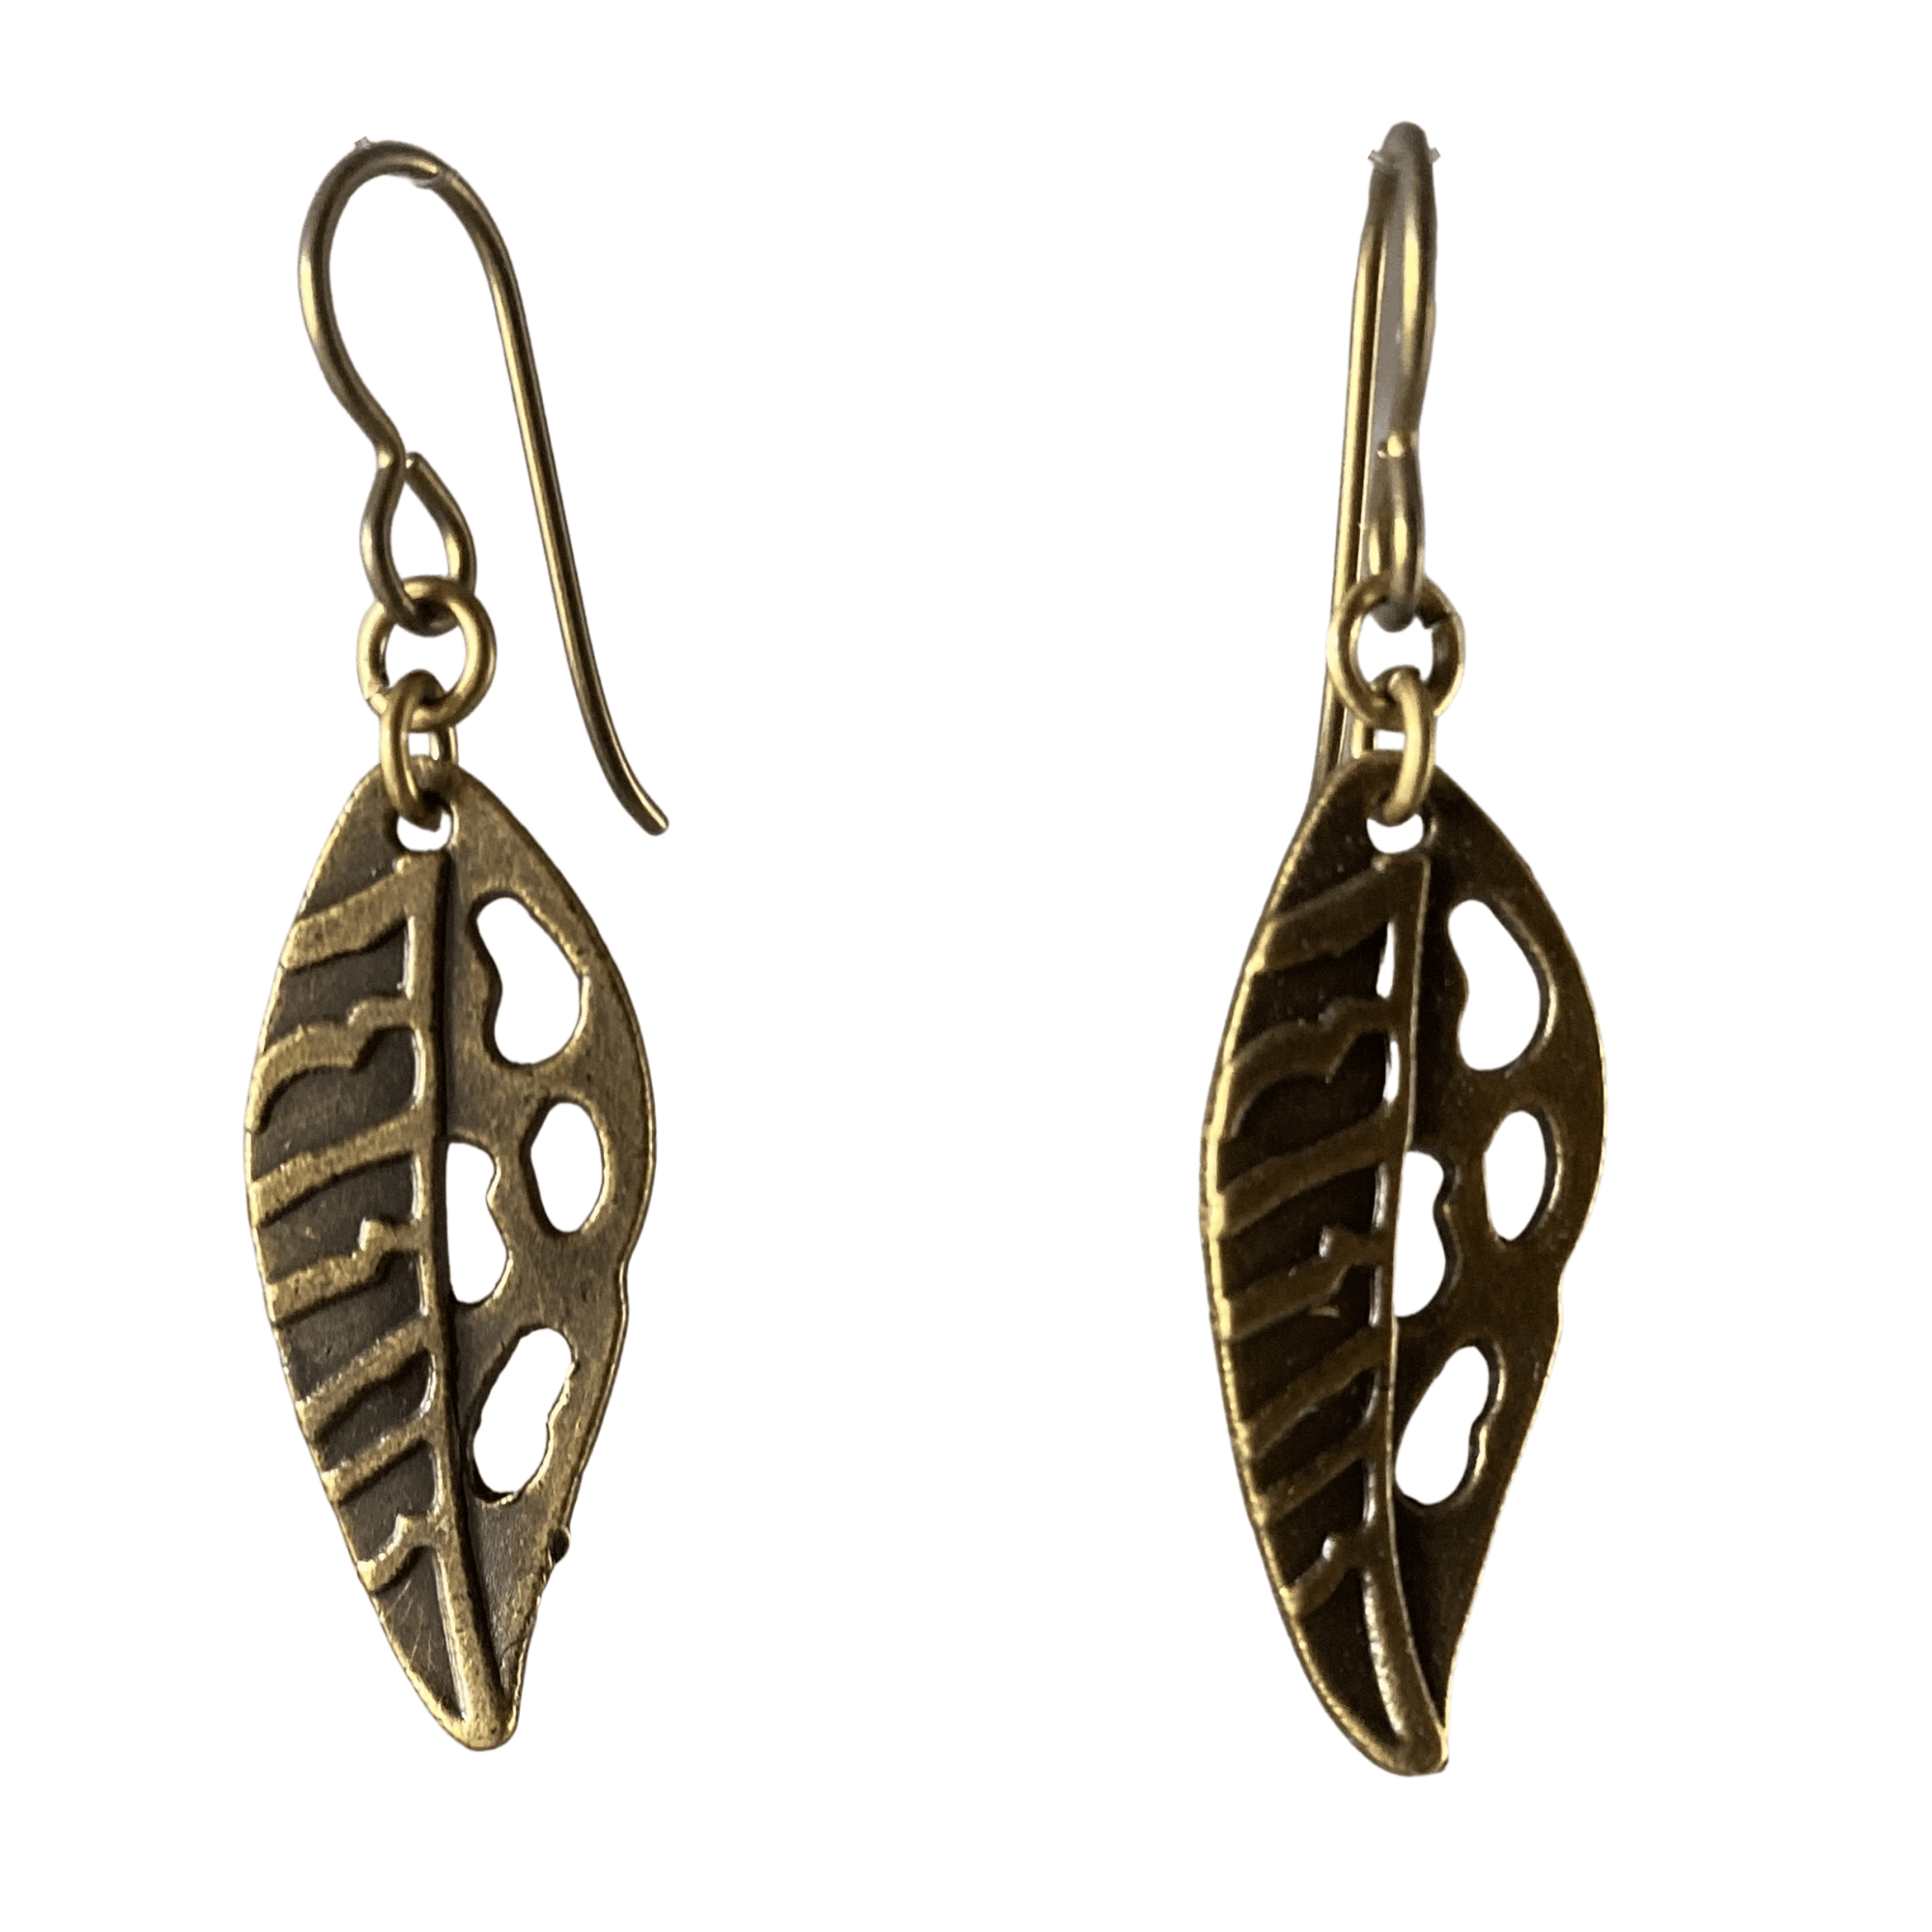 Antique Brass Cutout Leaf Earrings for Sensitive Ears-Earrings- Creative Jewelry by Marcia